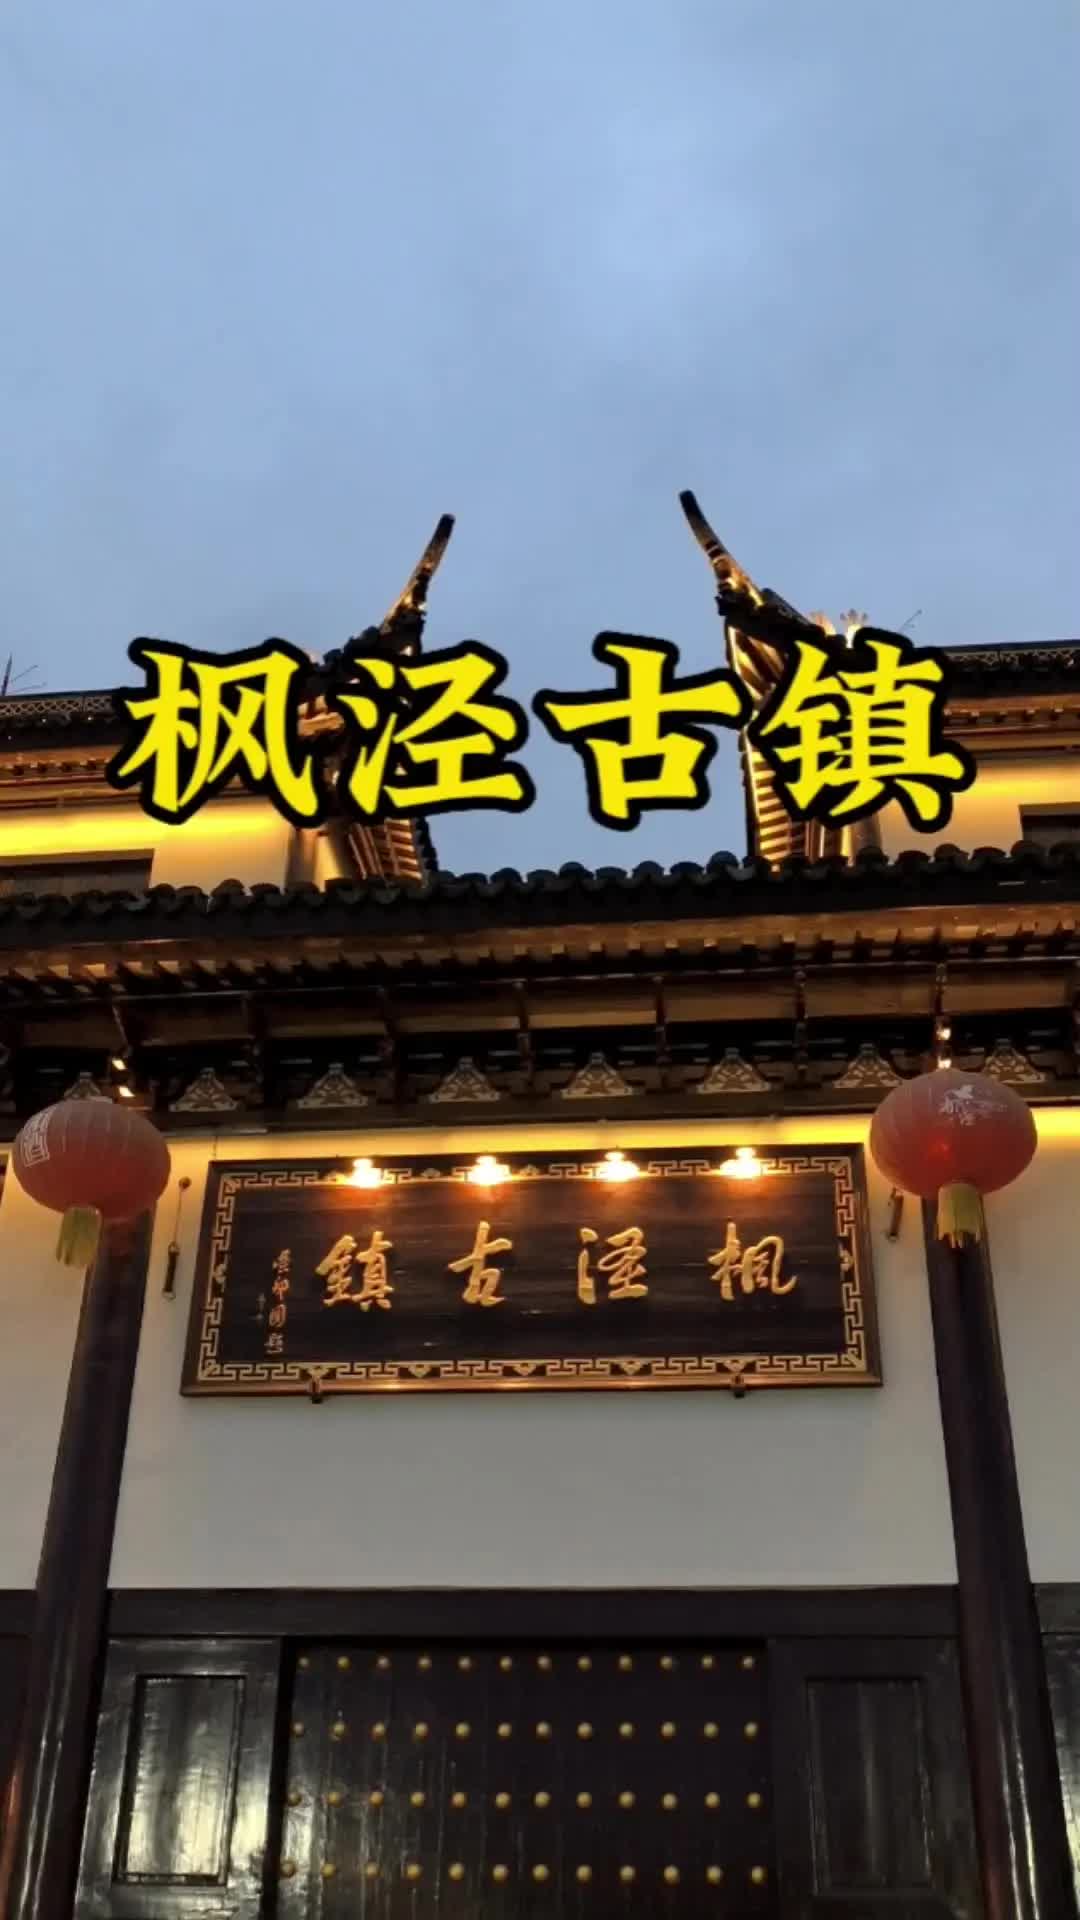 上海枫泾古镇灯光阑珊的迷人夜景